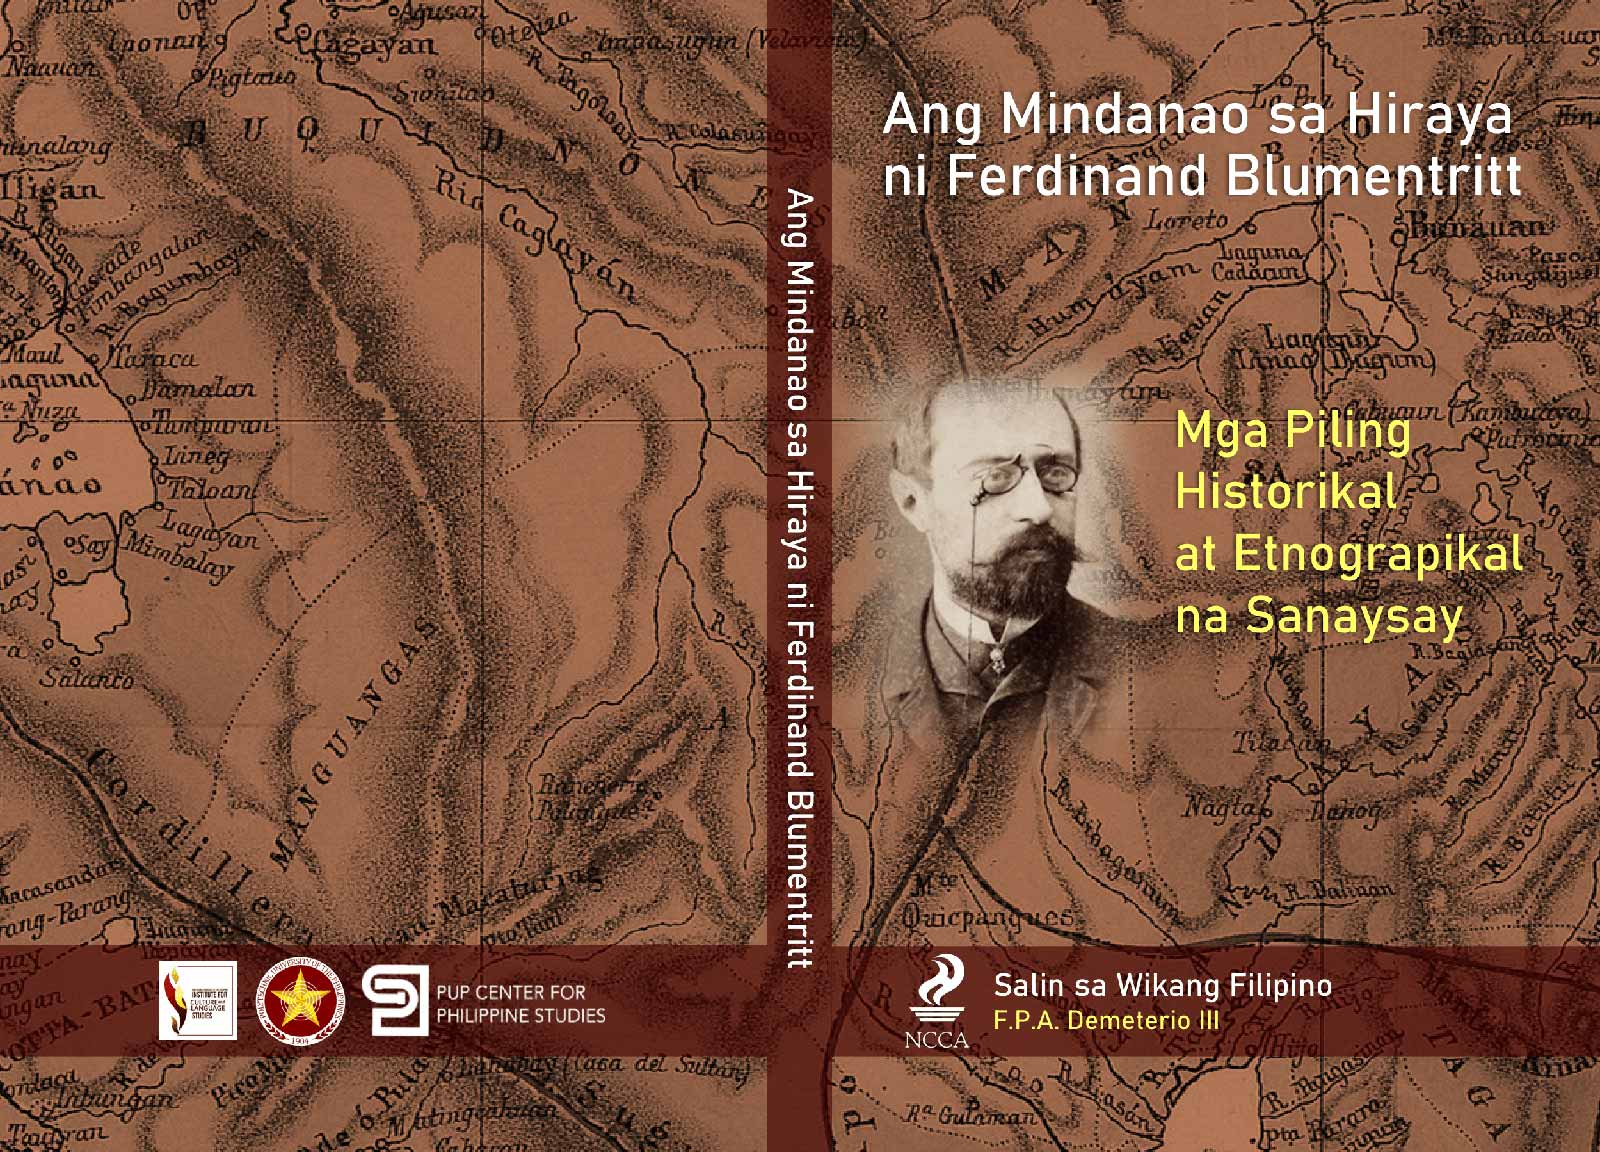 Ang Mindanao sa hiraya ni Ferdinand Blumentritt mga piling historikal at etnograpikal na sanaysay